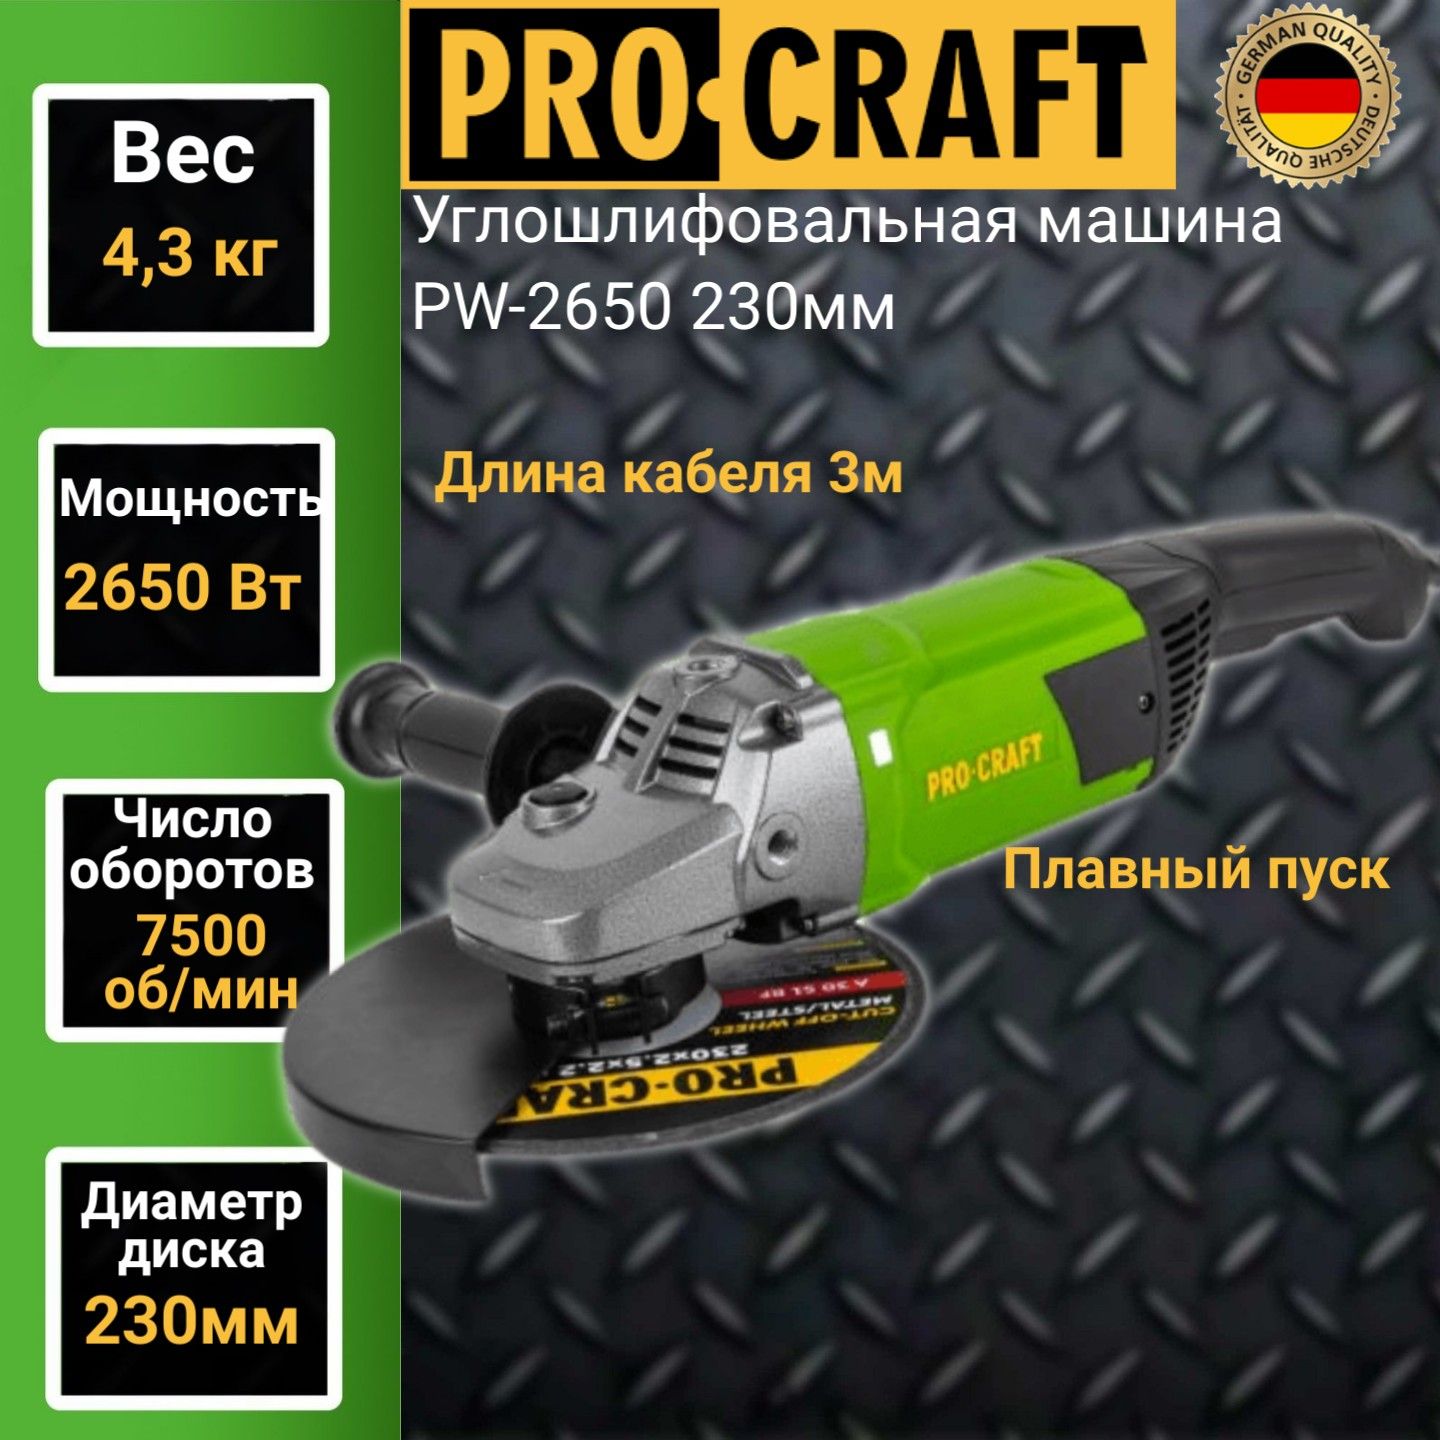 Углошлифовальная машина болгарка Procraft PW 2650, 230мм круг, 2650Вт, 7500об/мин машина металлическая muscle car масштаб 1 32 свет и звук инерция зеленый